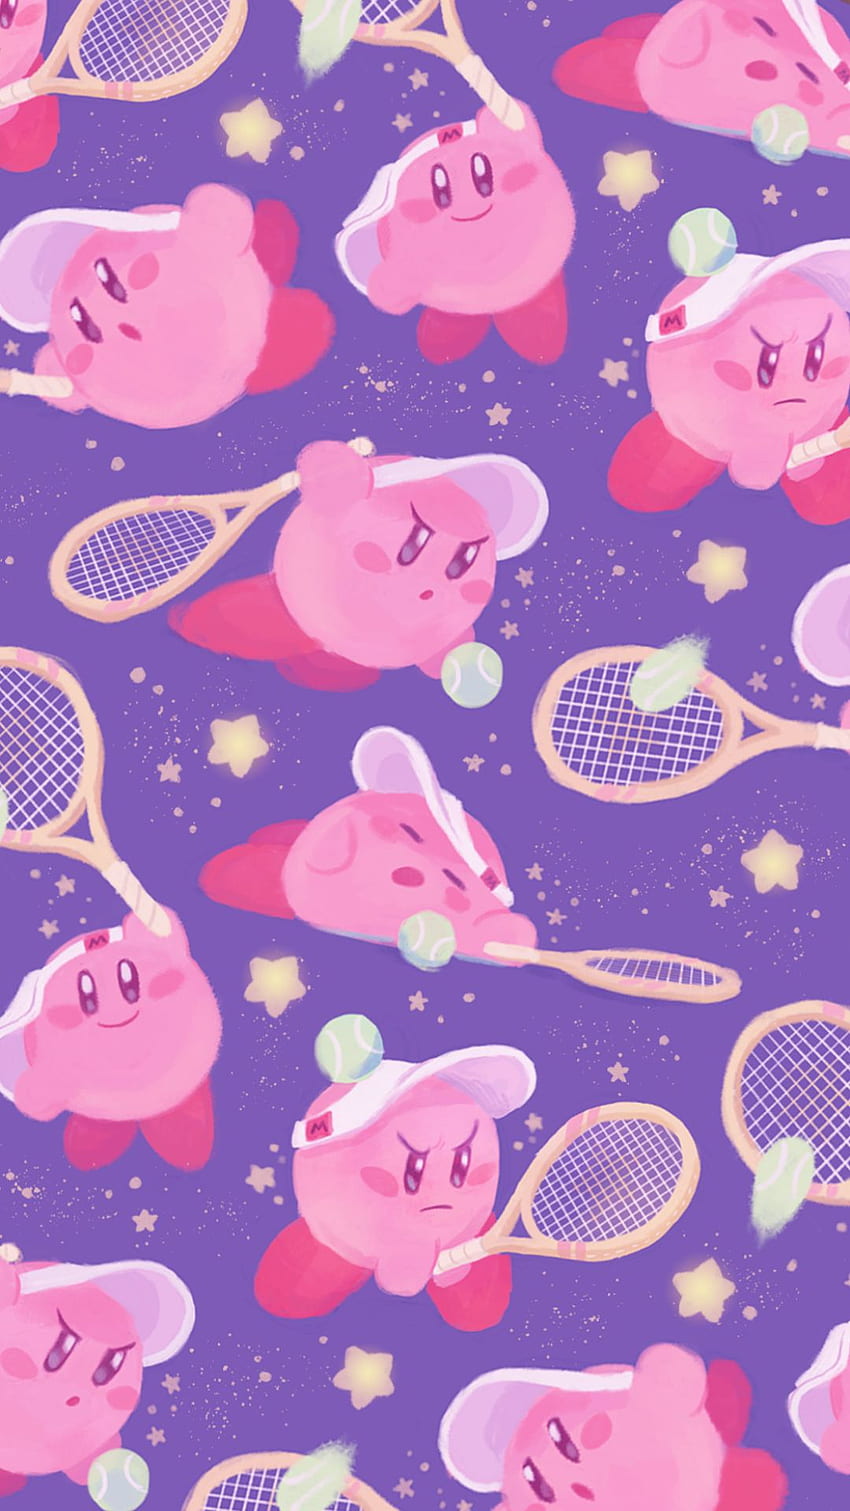 Kirby giữa một nền tím huyền diệu, bạn sẽ có cảm giác như đang lạc vào một thế giới nhỏ xinh đẹp. Kirby nổi bật giữa màu tím như một thiên thần tuyệt đẹp, sẵn sàng đưa bạn vào cuộc phiêu lưu mới thú vị hơn bao giờ hết. Hãy dành chút thời gian để ngắm nhìn hình ảnh này và cảm nhận cảm giác tuyệt vời mà nó mang lại cho bạn.